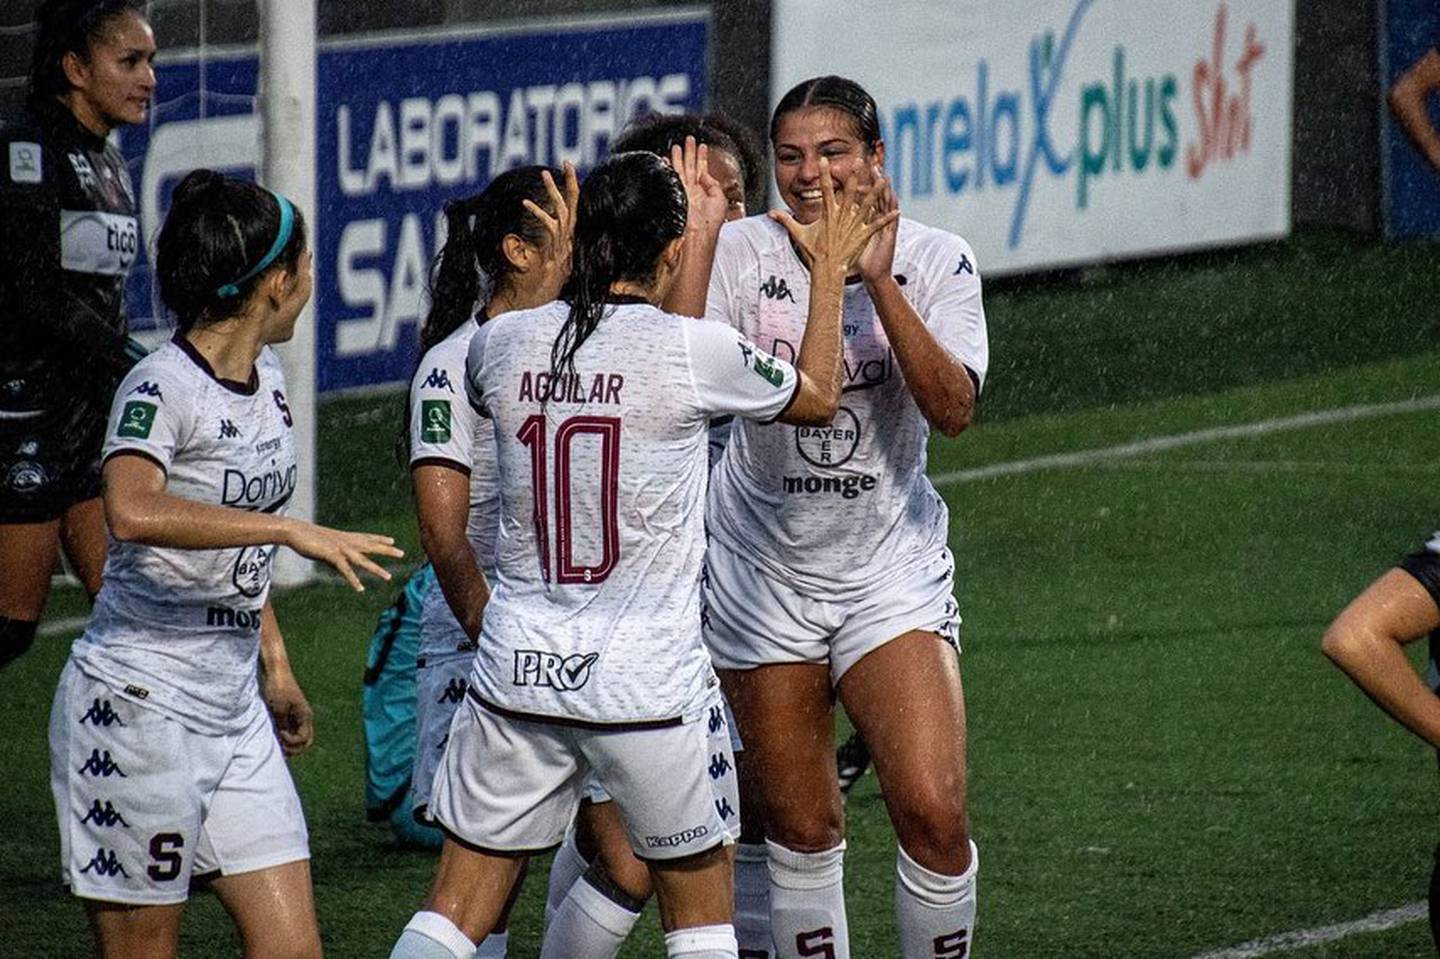 La estadounidense, Jenna Prathapa (de frente sonriendo), anotó tres goles en la goleada 4-0 que Saprissa le dio a Sporting el 22 de agosto como parte de la fecha 8 del torneo clausura.